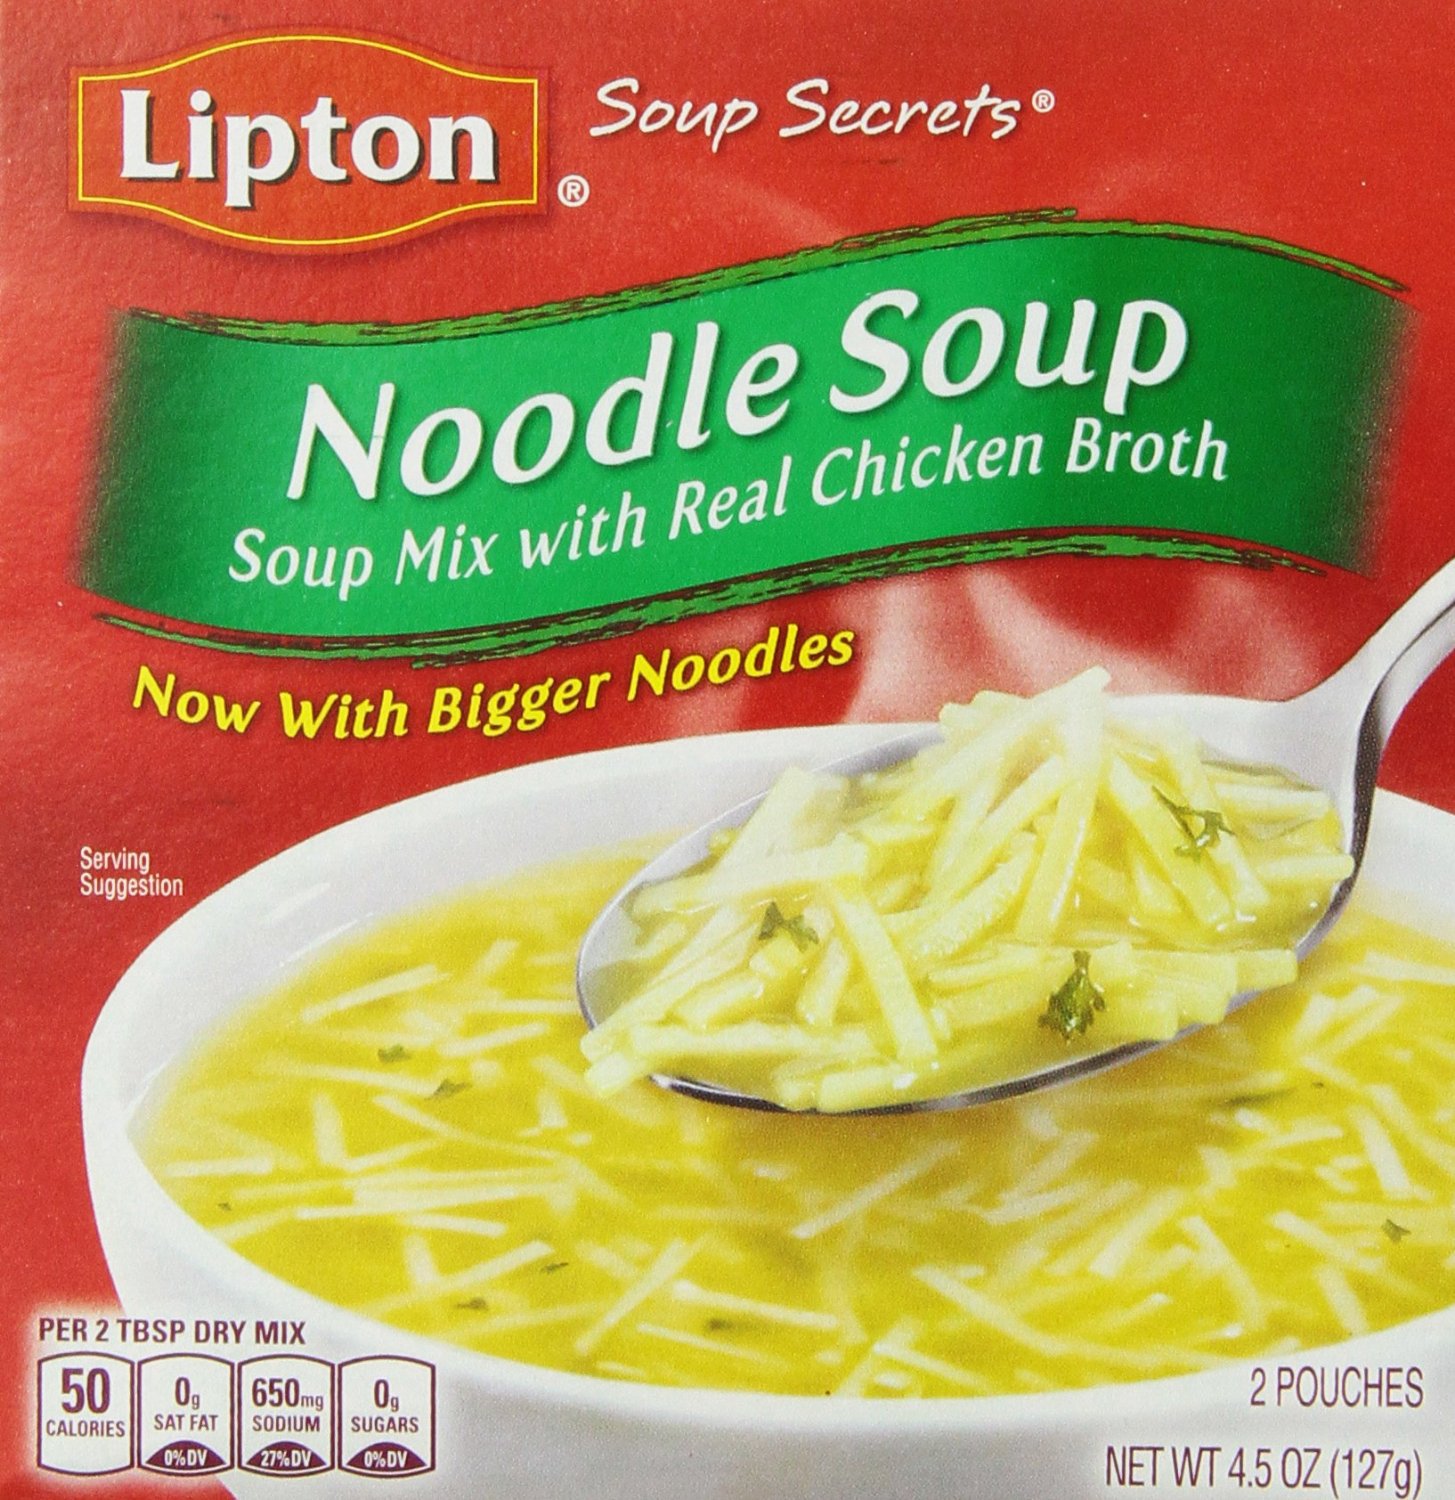 Lipton, Soup Secrets, Noodle Soup Mix, Chicken Broth, 2 Count, 4.5oz Box.